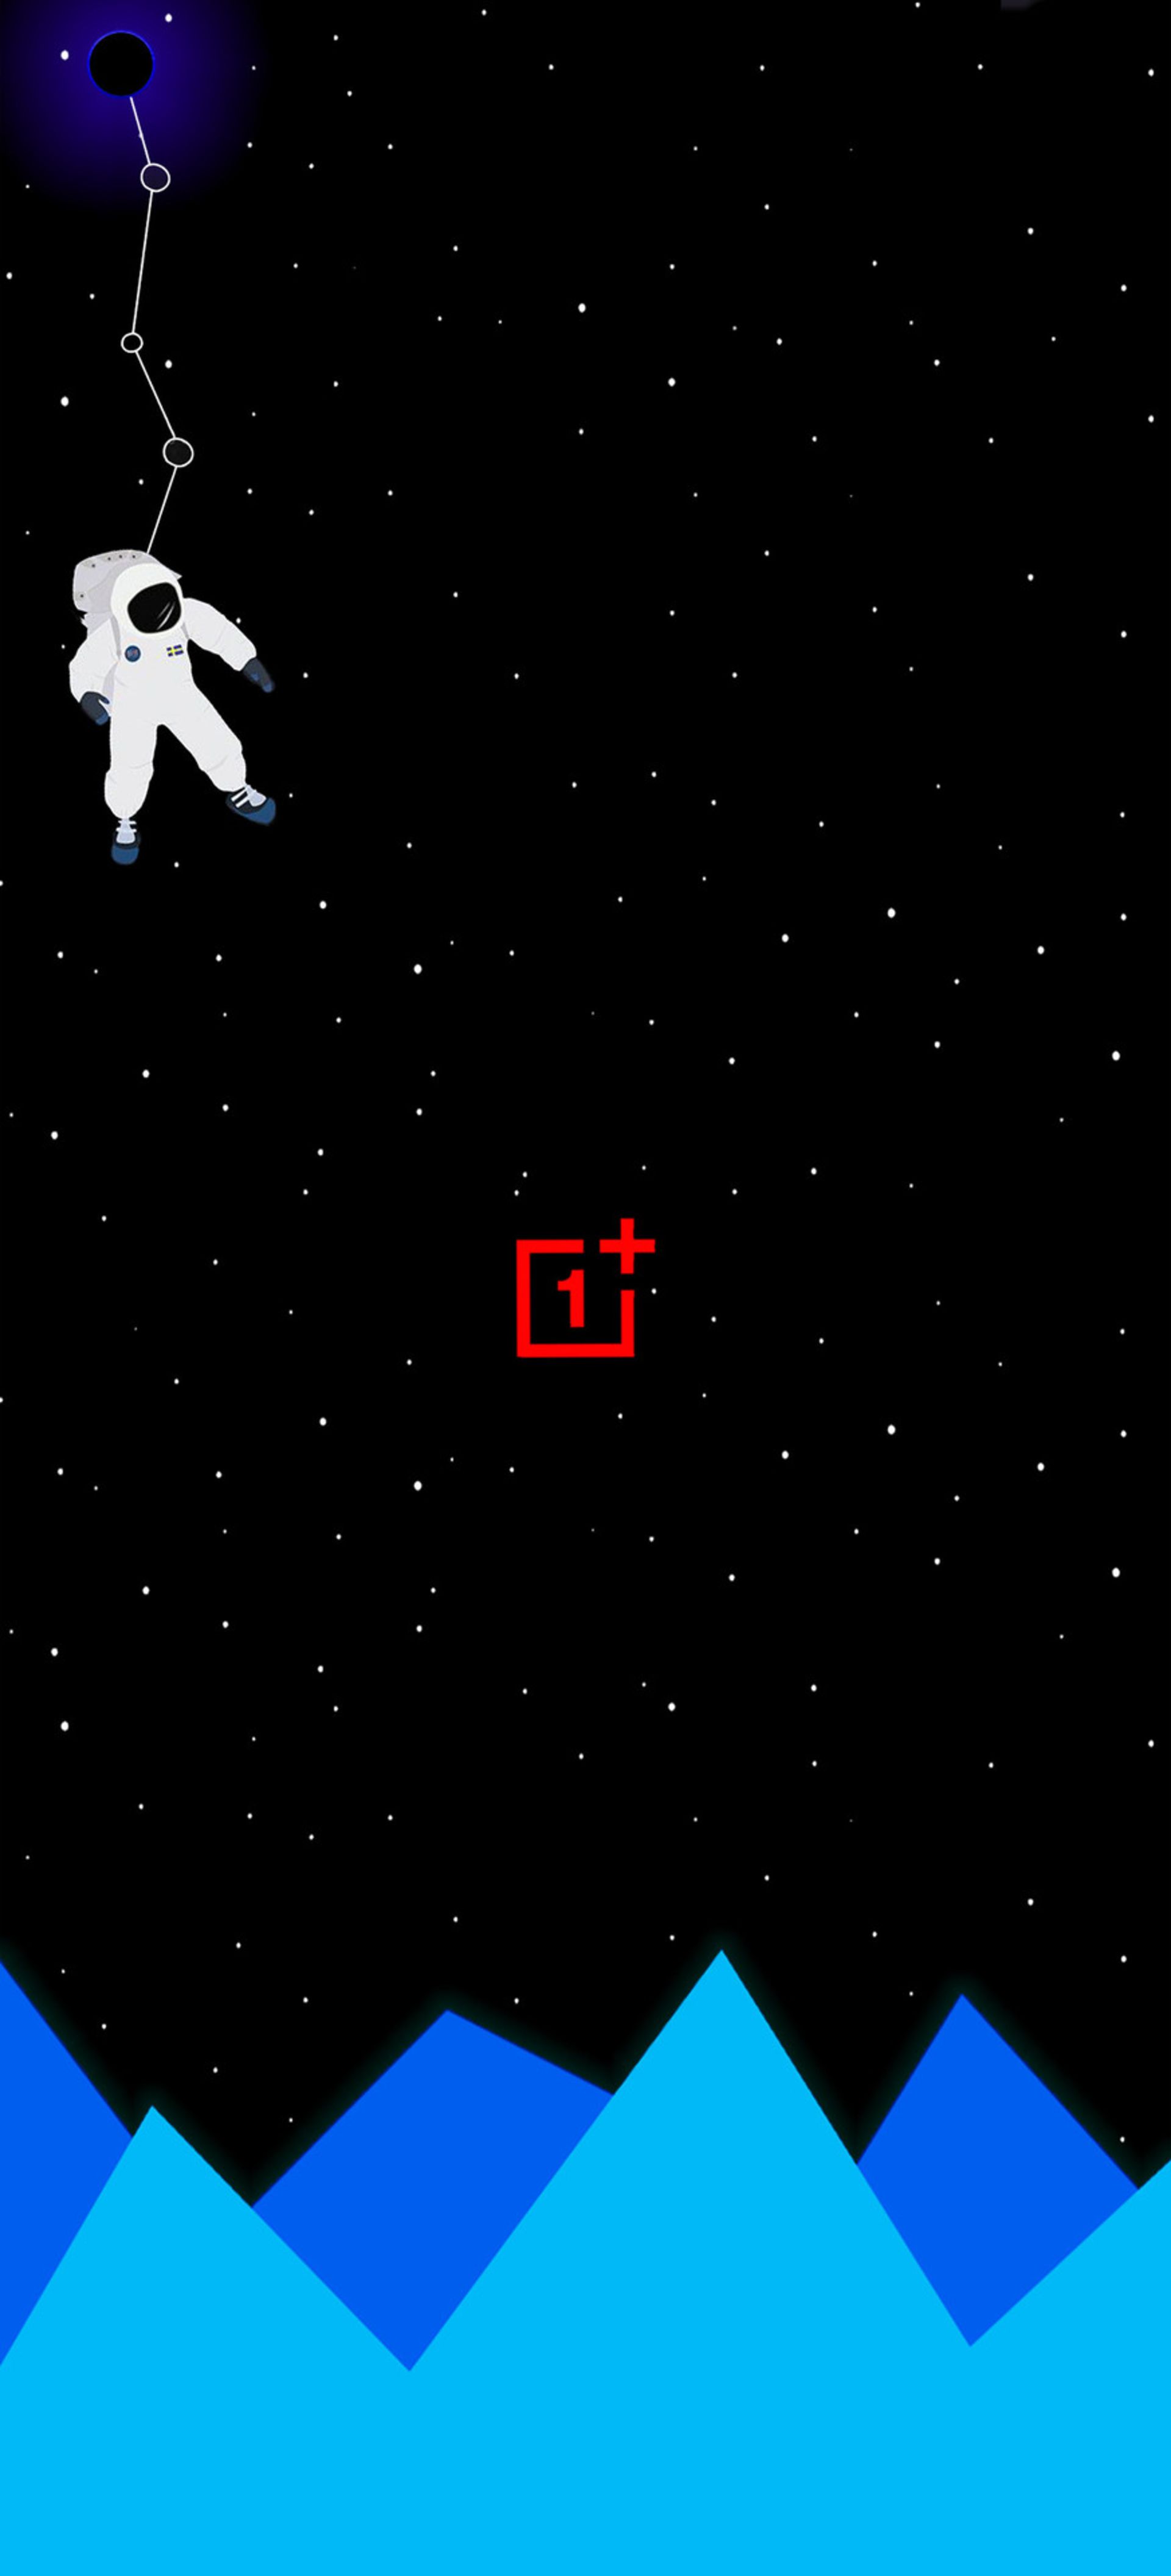 دانلود والپیپر وان پلاس آسمان پرستاره فضانورد لوگو قرمز OnePlus